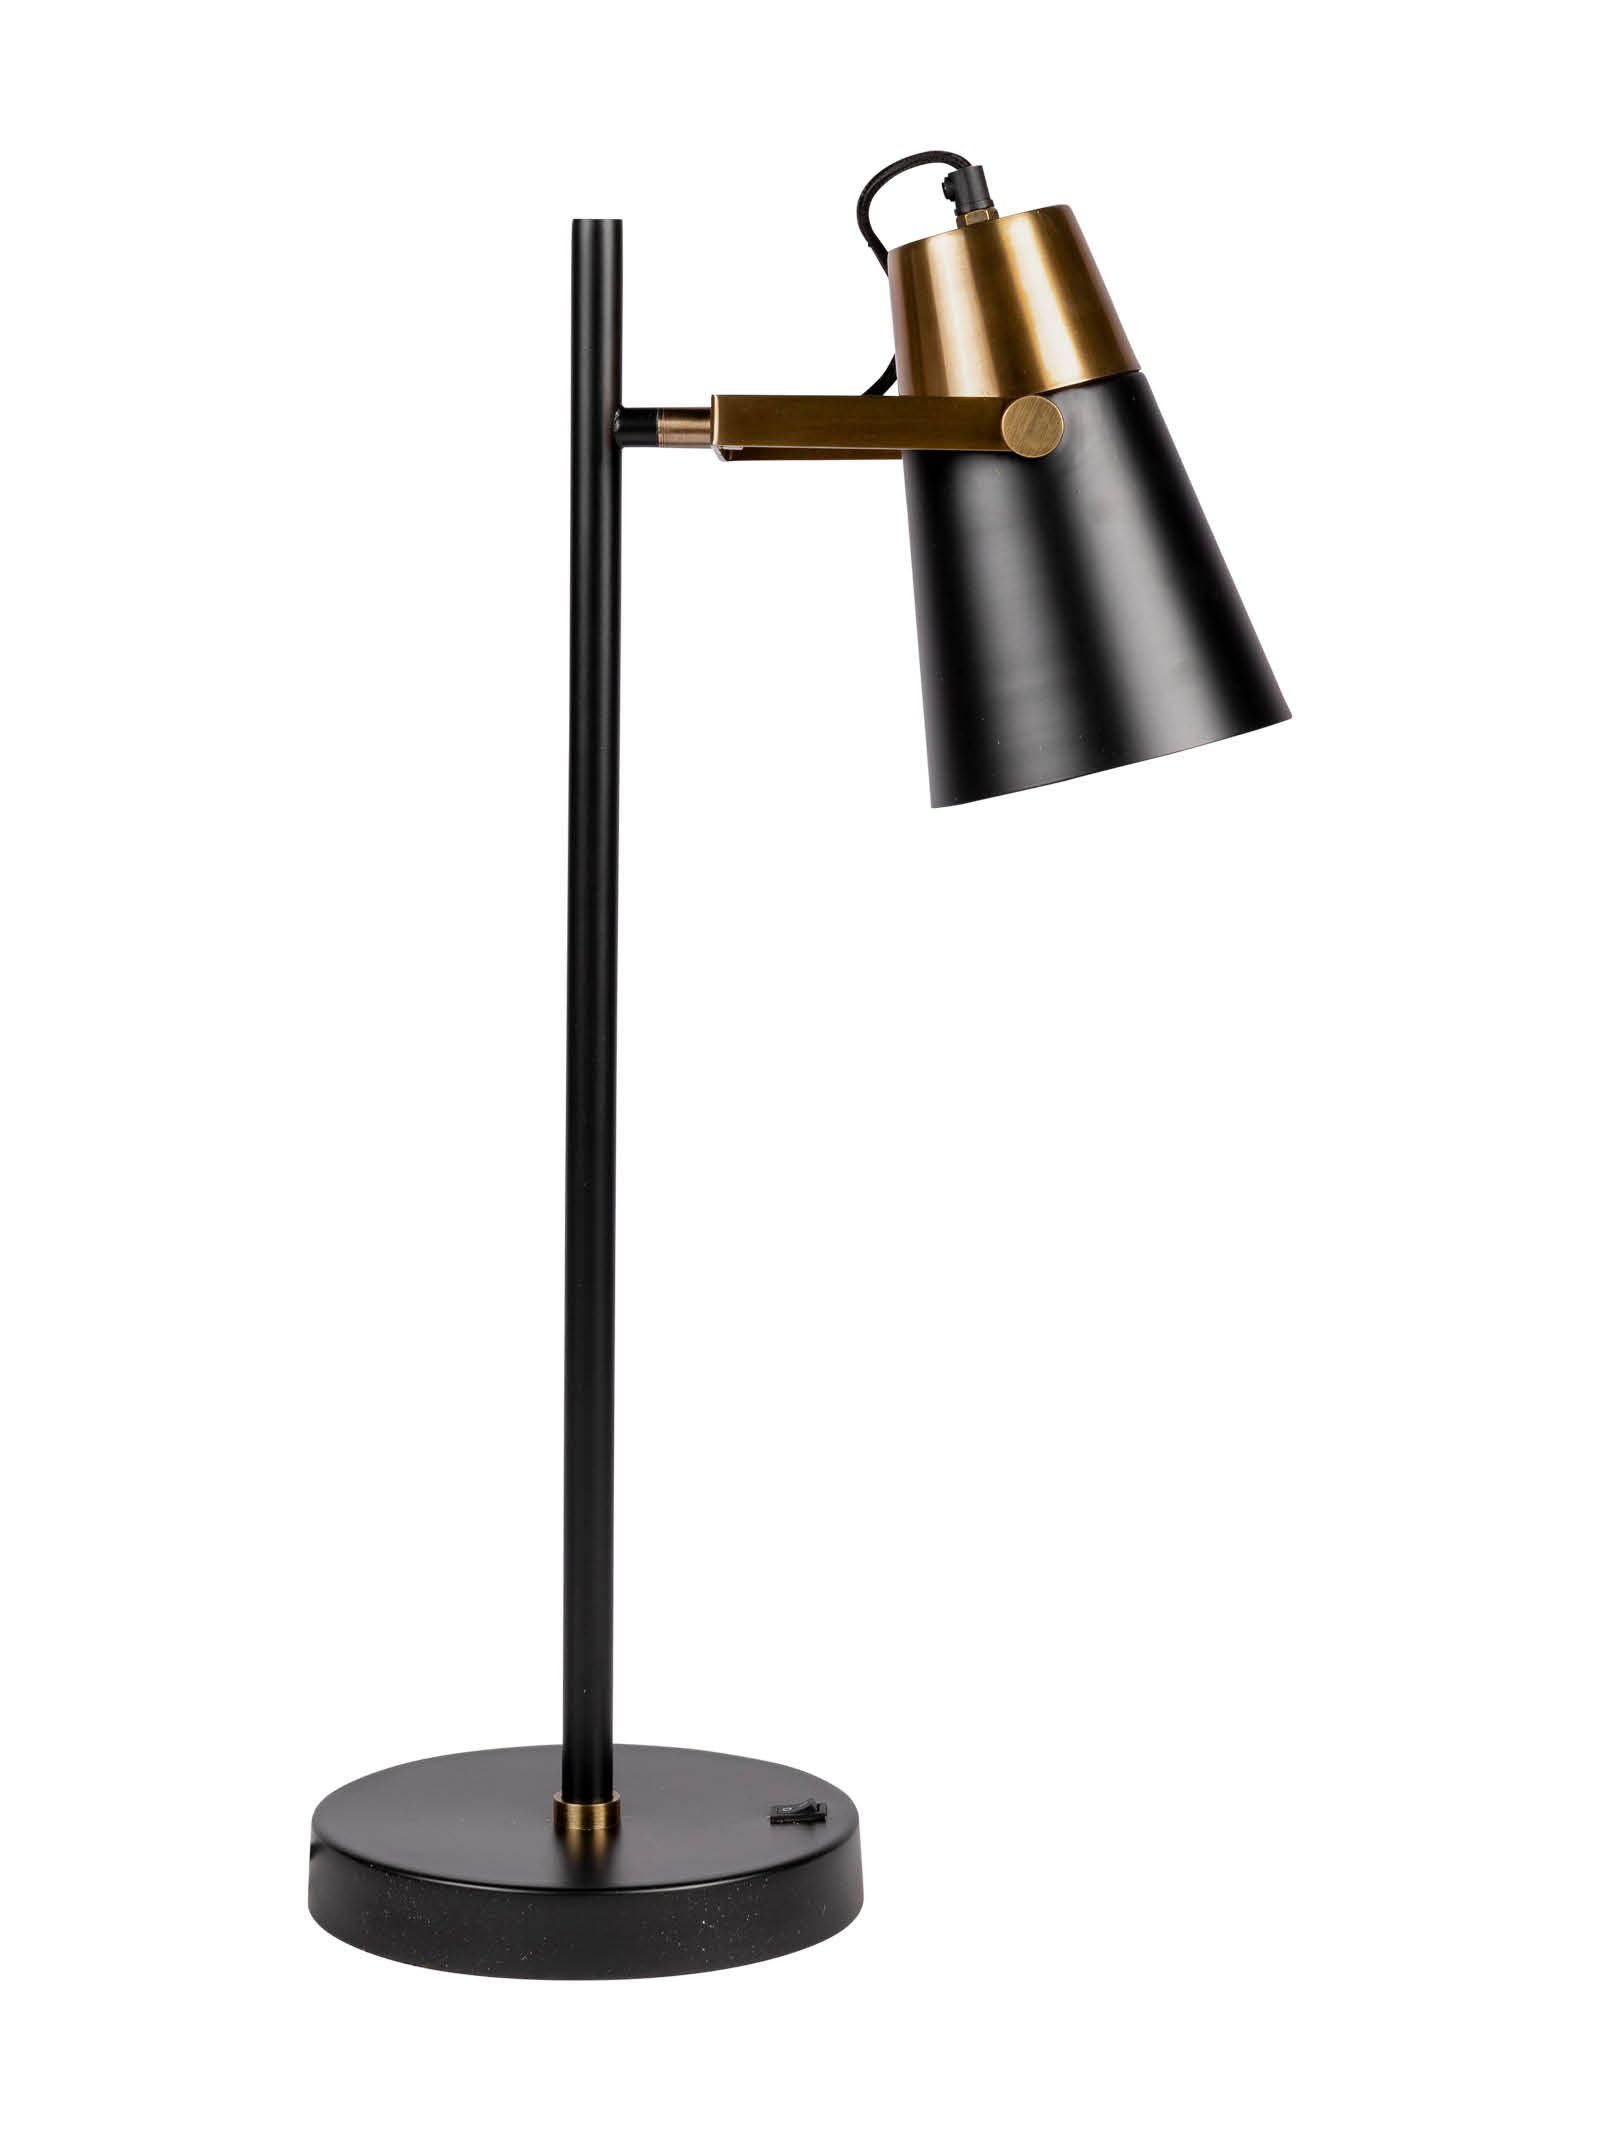 Mystique Desk Lamp in Nightshade